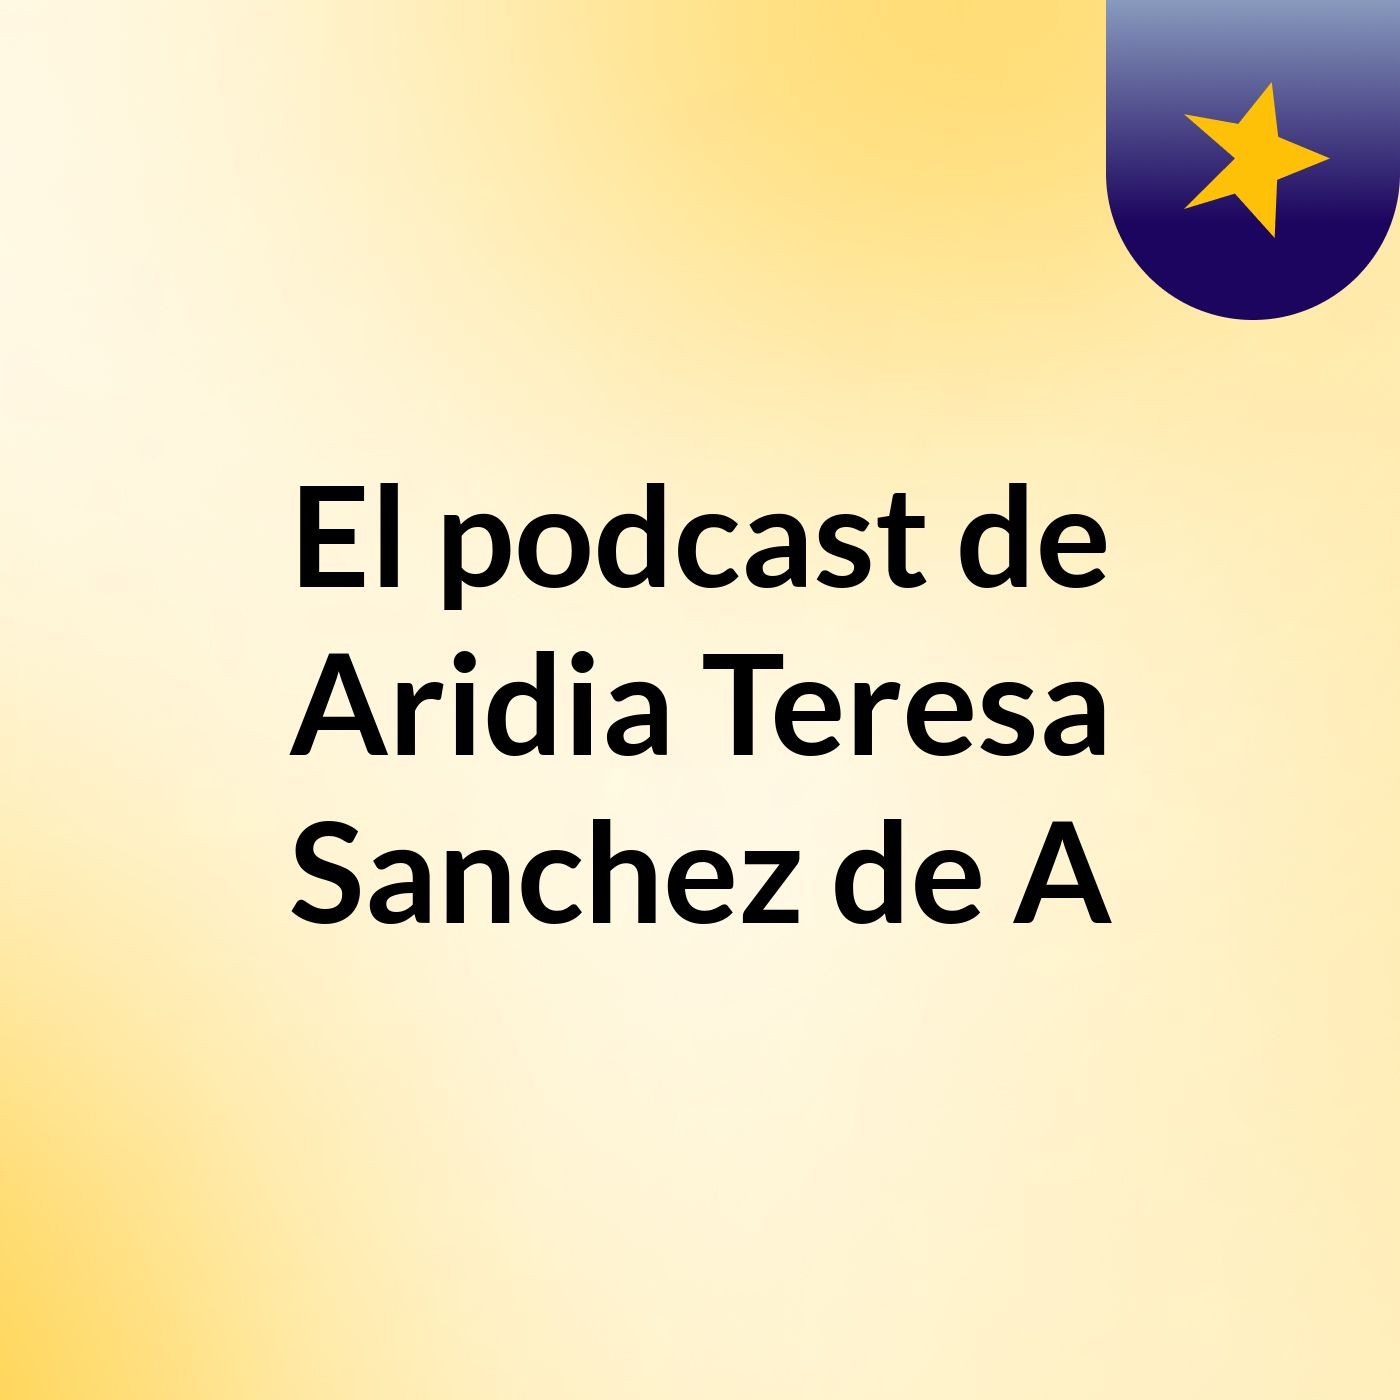 El podcast de Aridia Teresa Sanchez de A